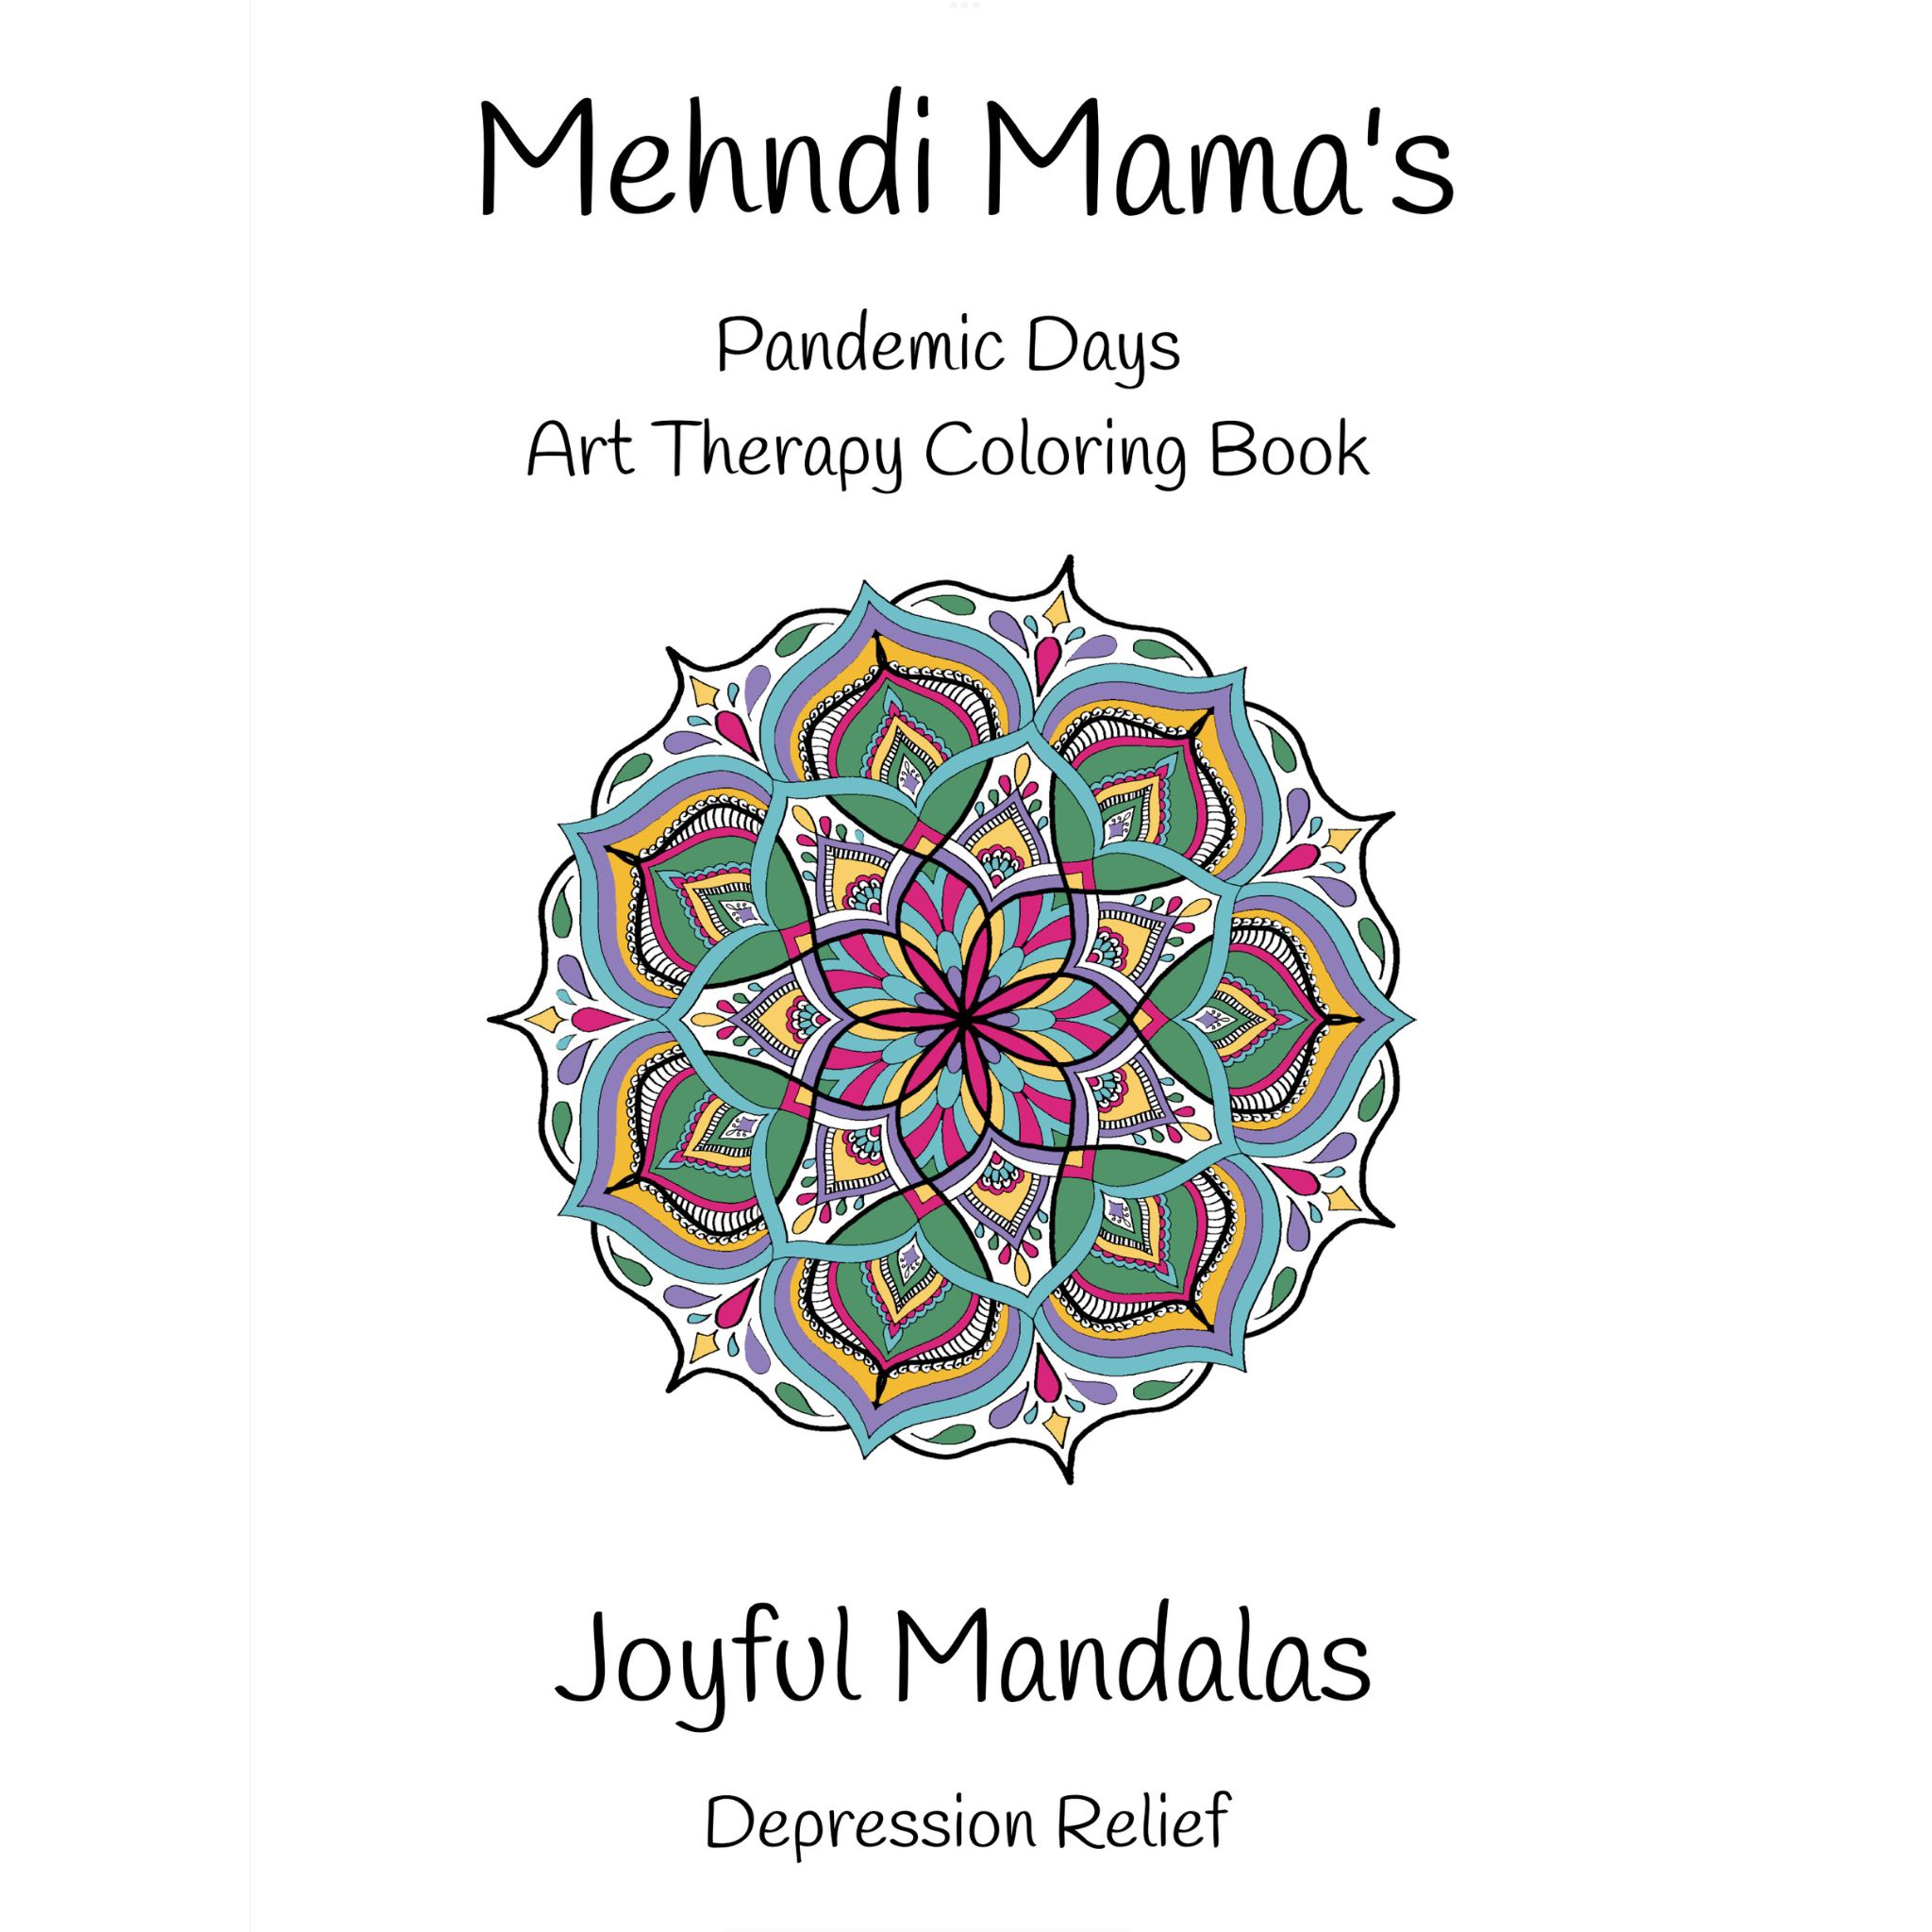 Mehndi mamas joyful mandalas coloring book for depression relief